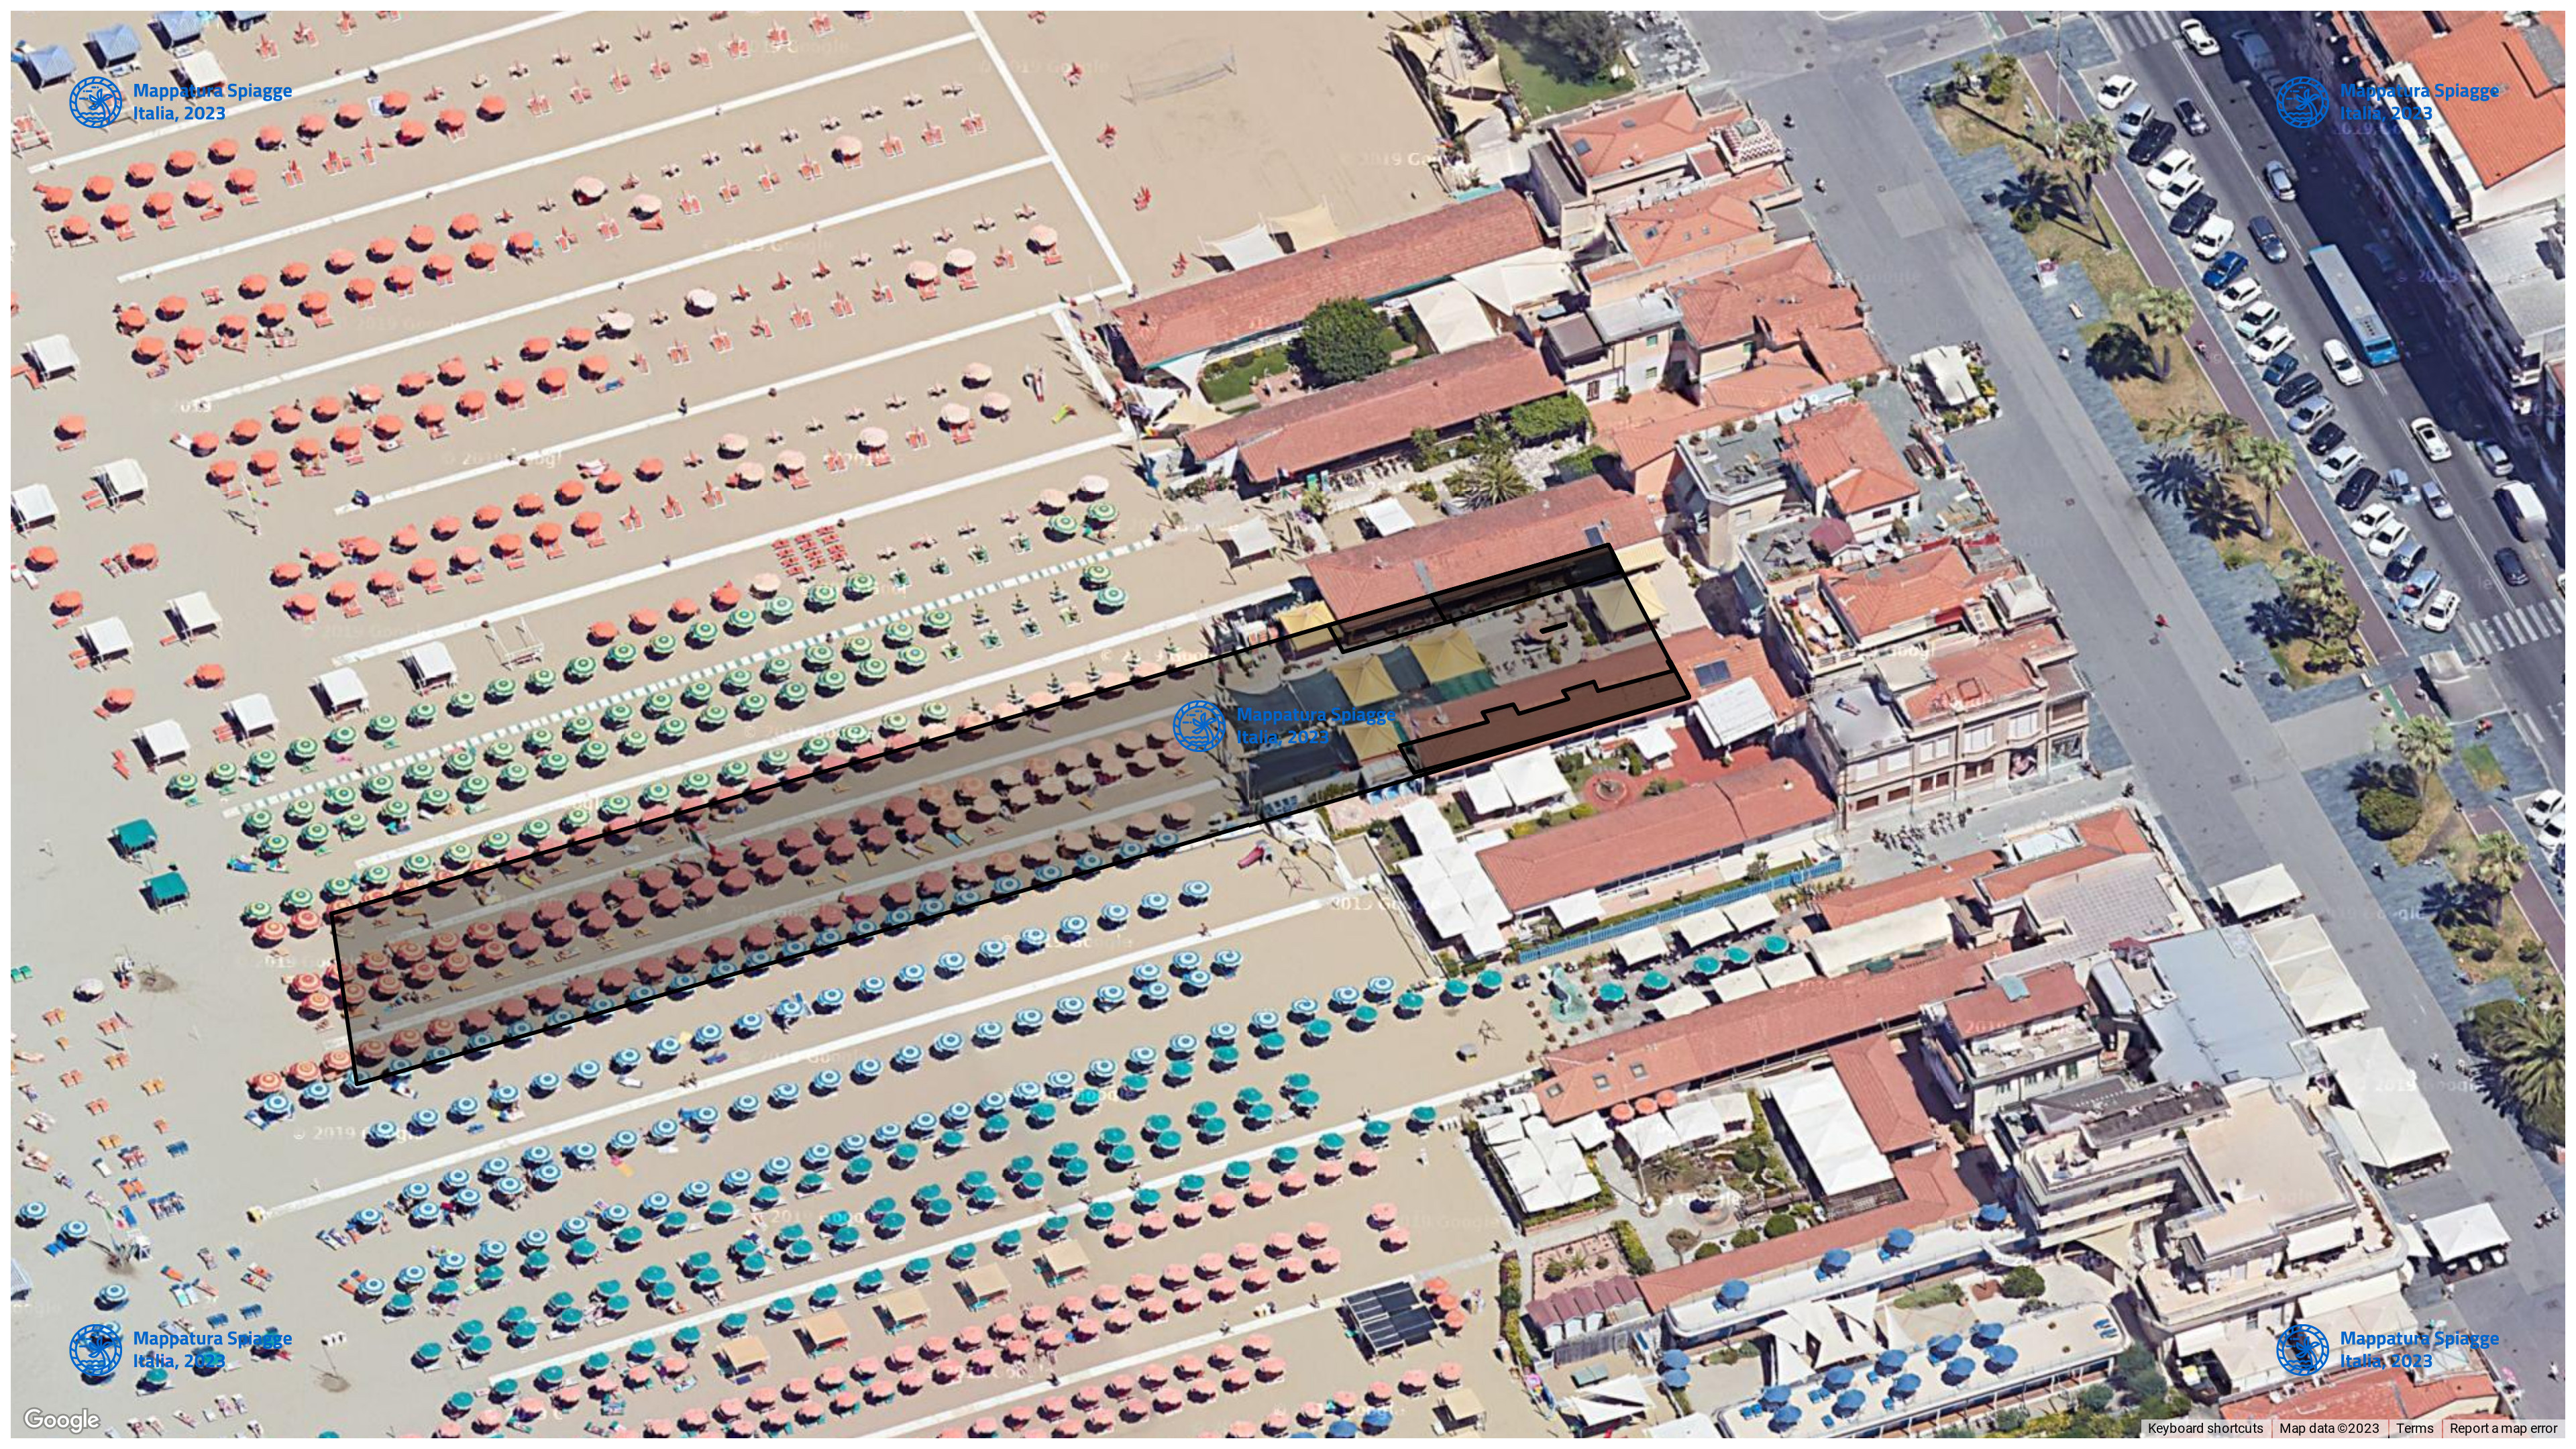 Foto Satellitare - Google Maps - Comune Viareggio, Concessione: N. 22 / 2006 del 20-09-2023